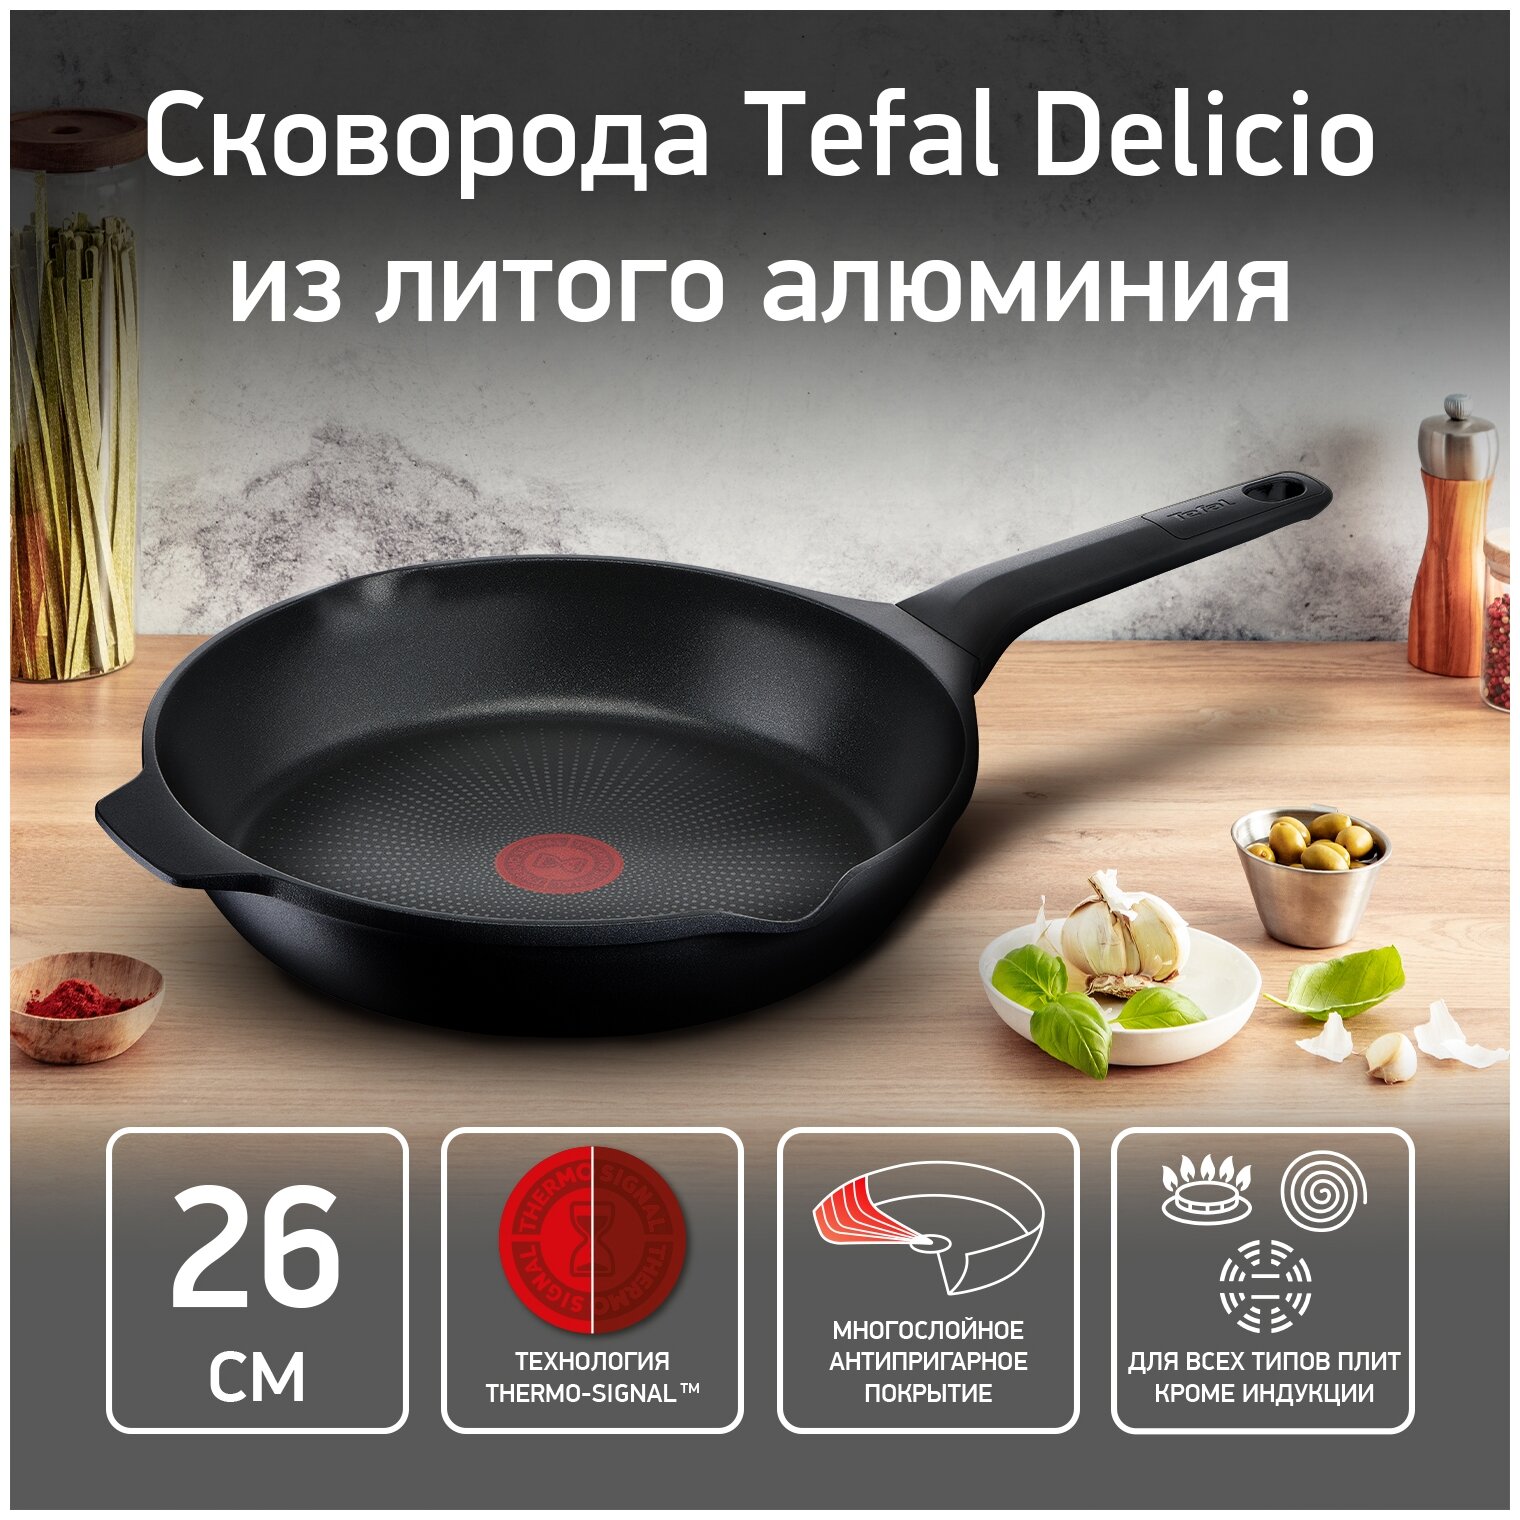 Сковорода Tefal Delicio E2320574 26см (2100118220)